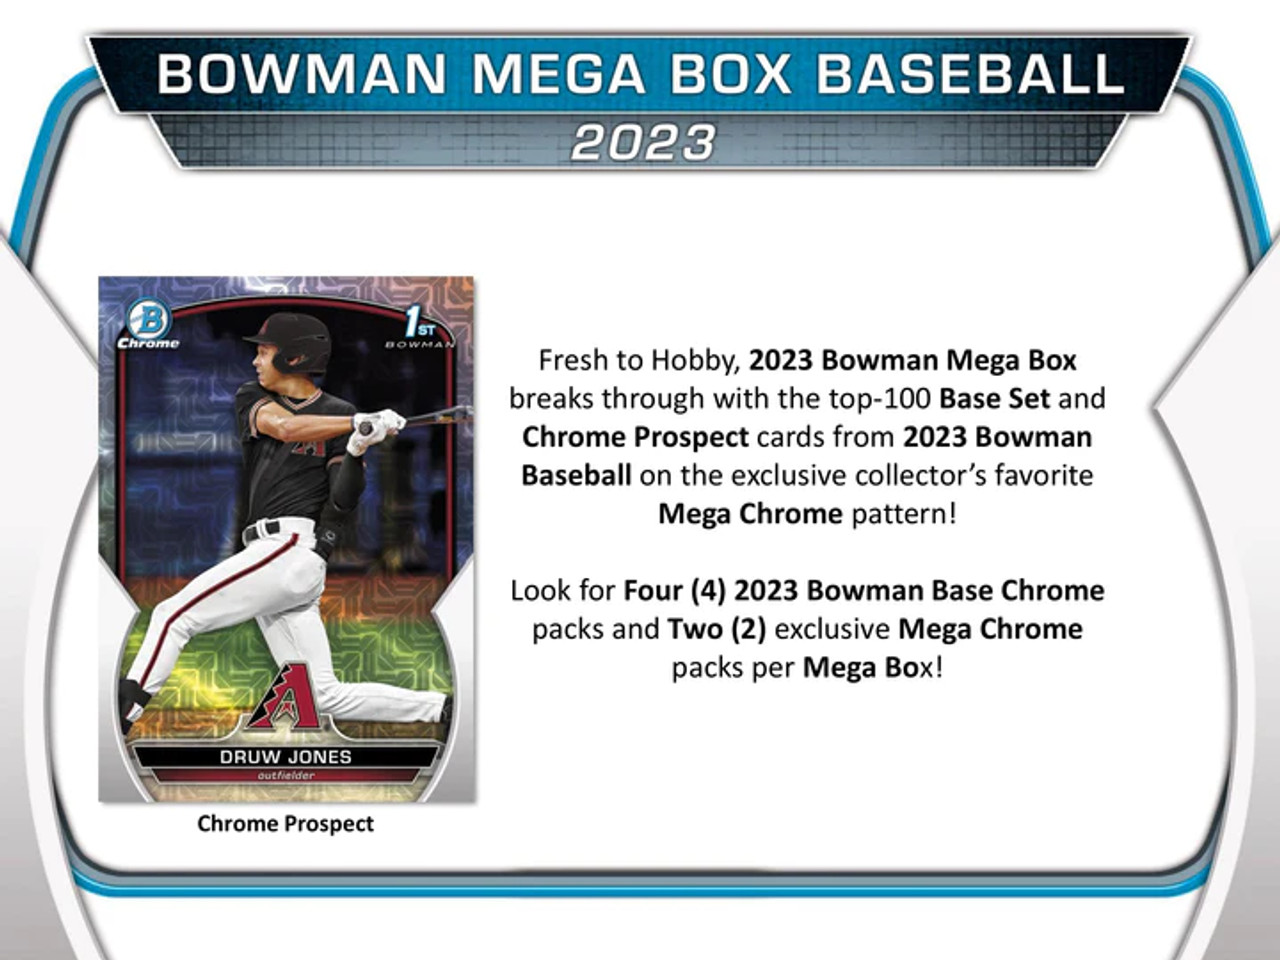  2023 Topps Bowman Baseball MLB Retail Pack - 1 Pack